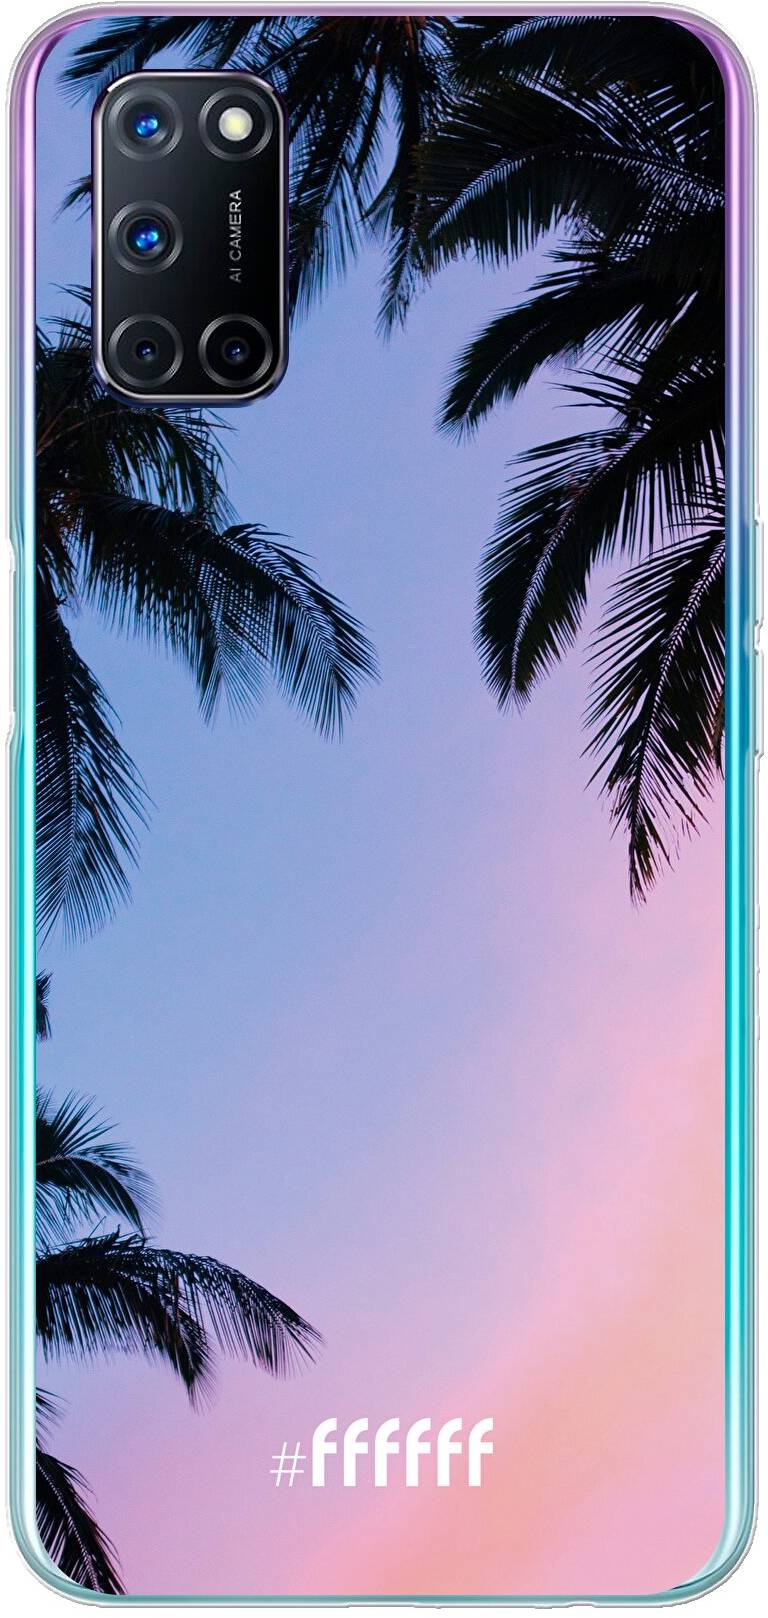 Sunset Palms A92